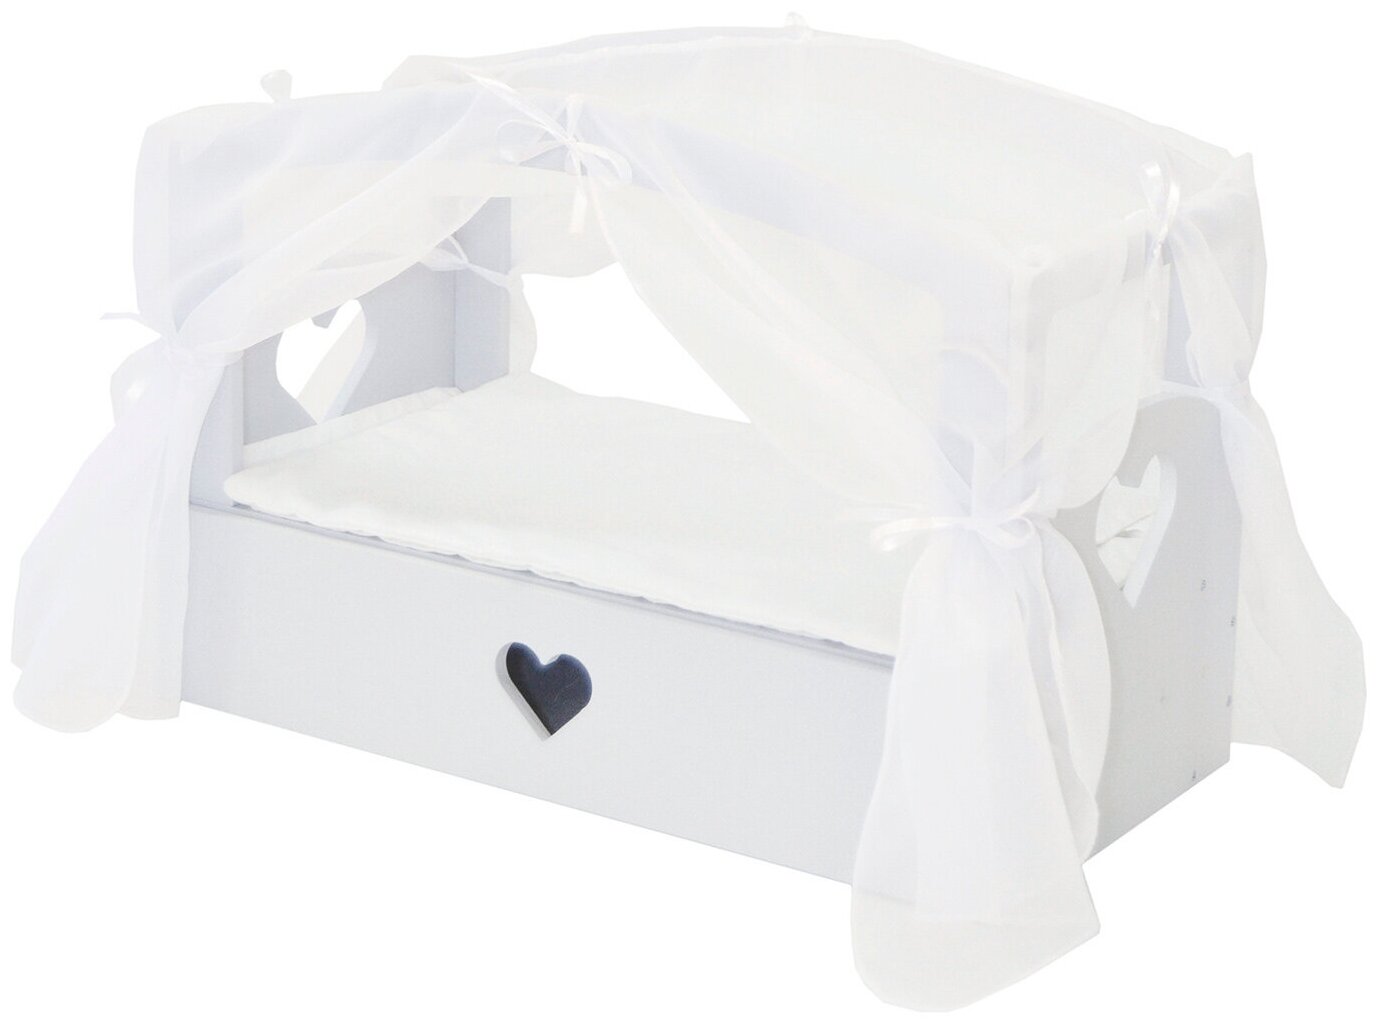 Кроватка с бельевым ящиком Серии "Любимая кукла" Мини, цвет Дрим